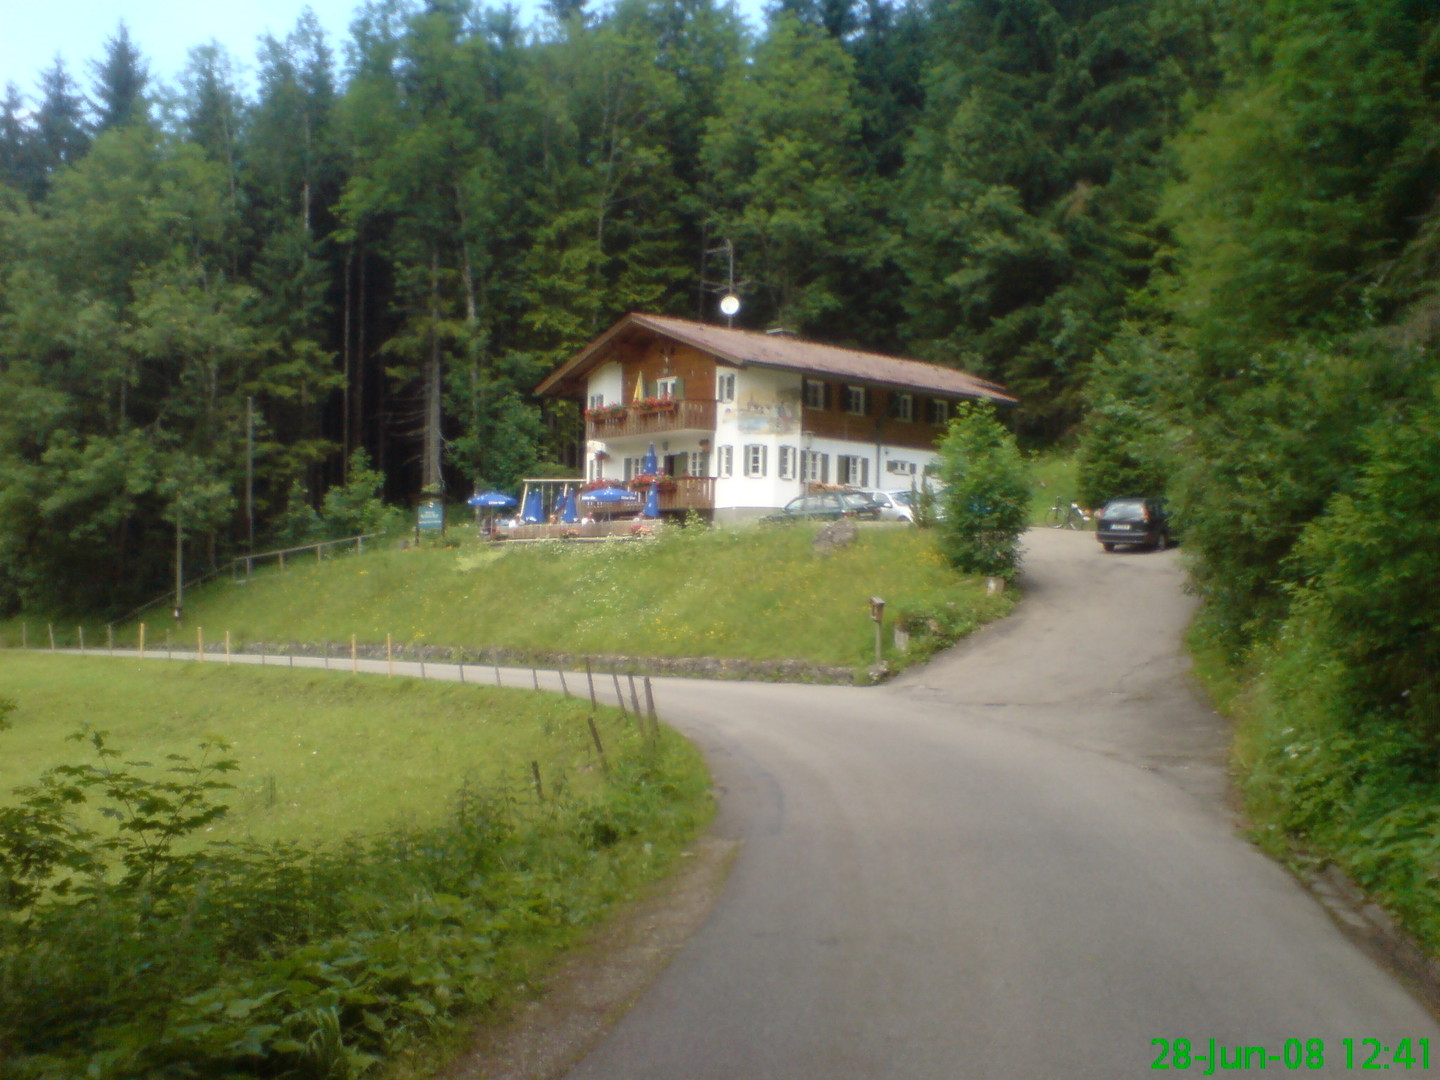 Konstanzer Jägerhaus.